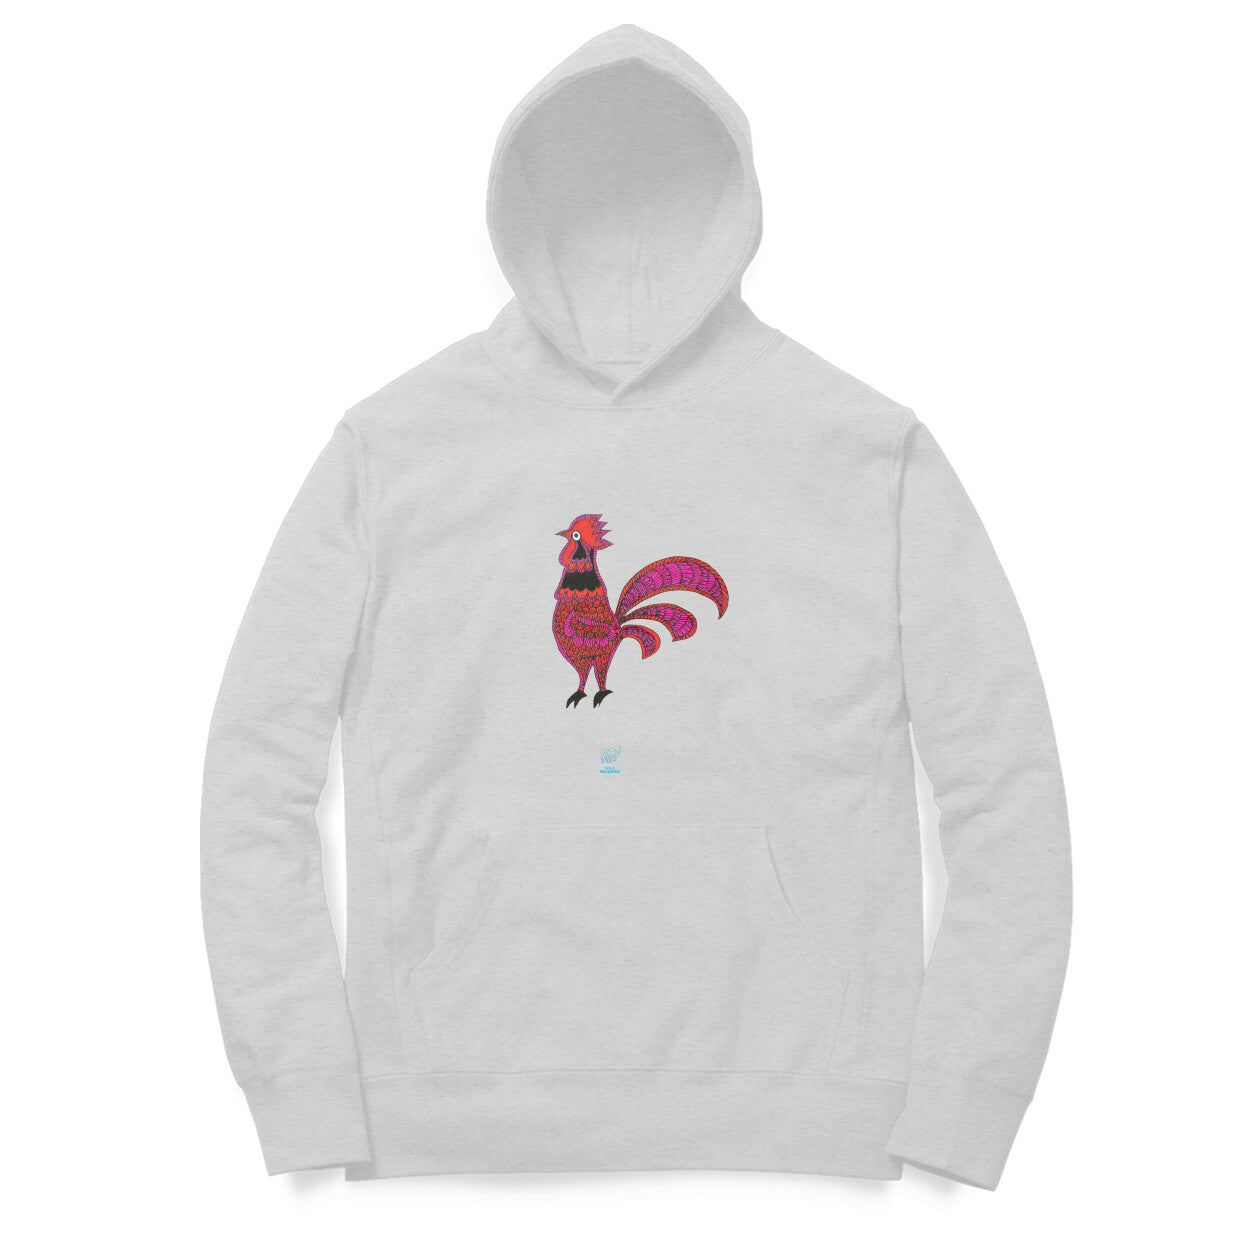 Cock- Unisex Hooded Sweatshirt